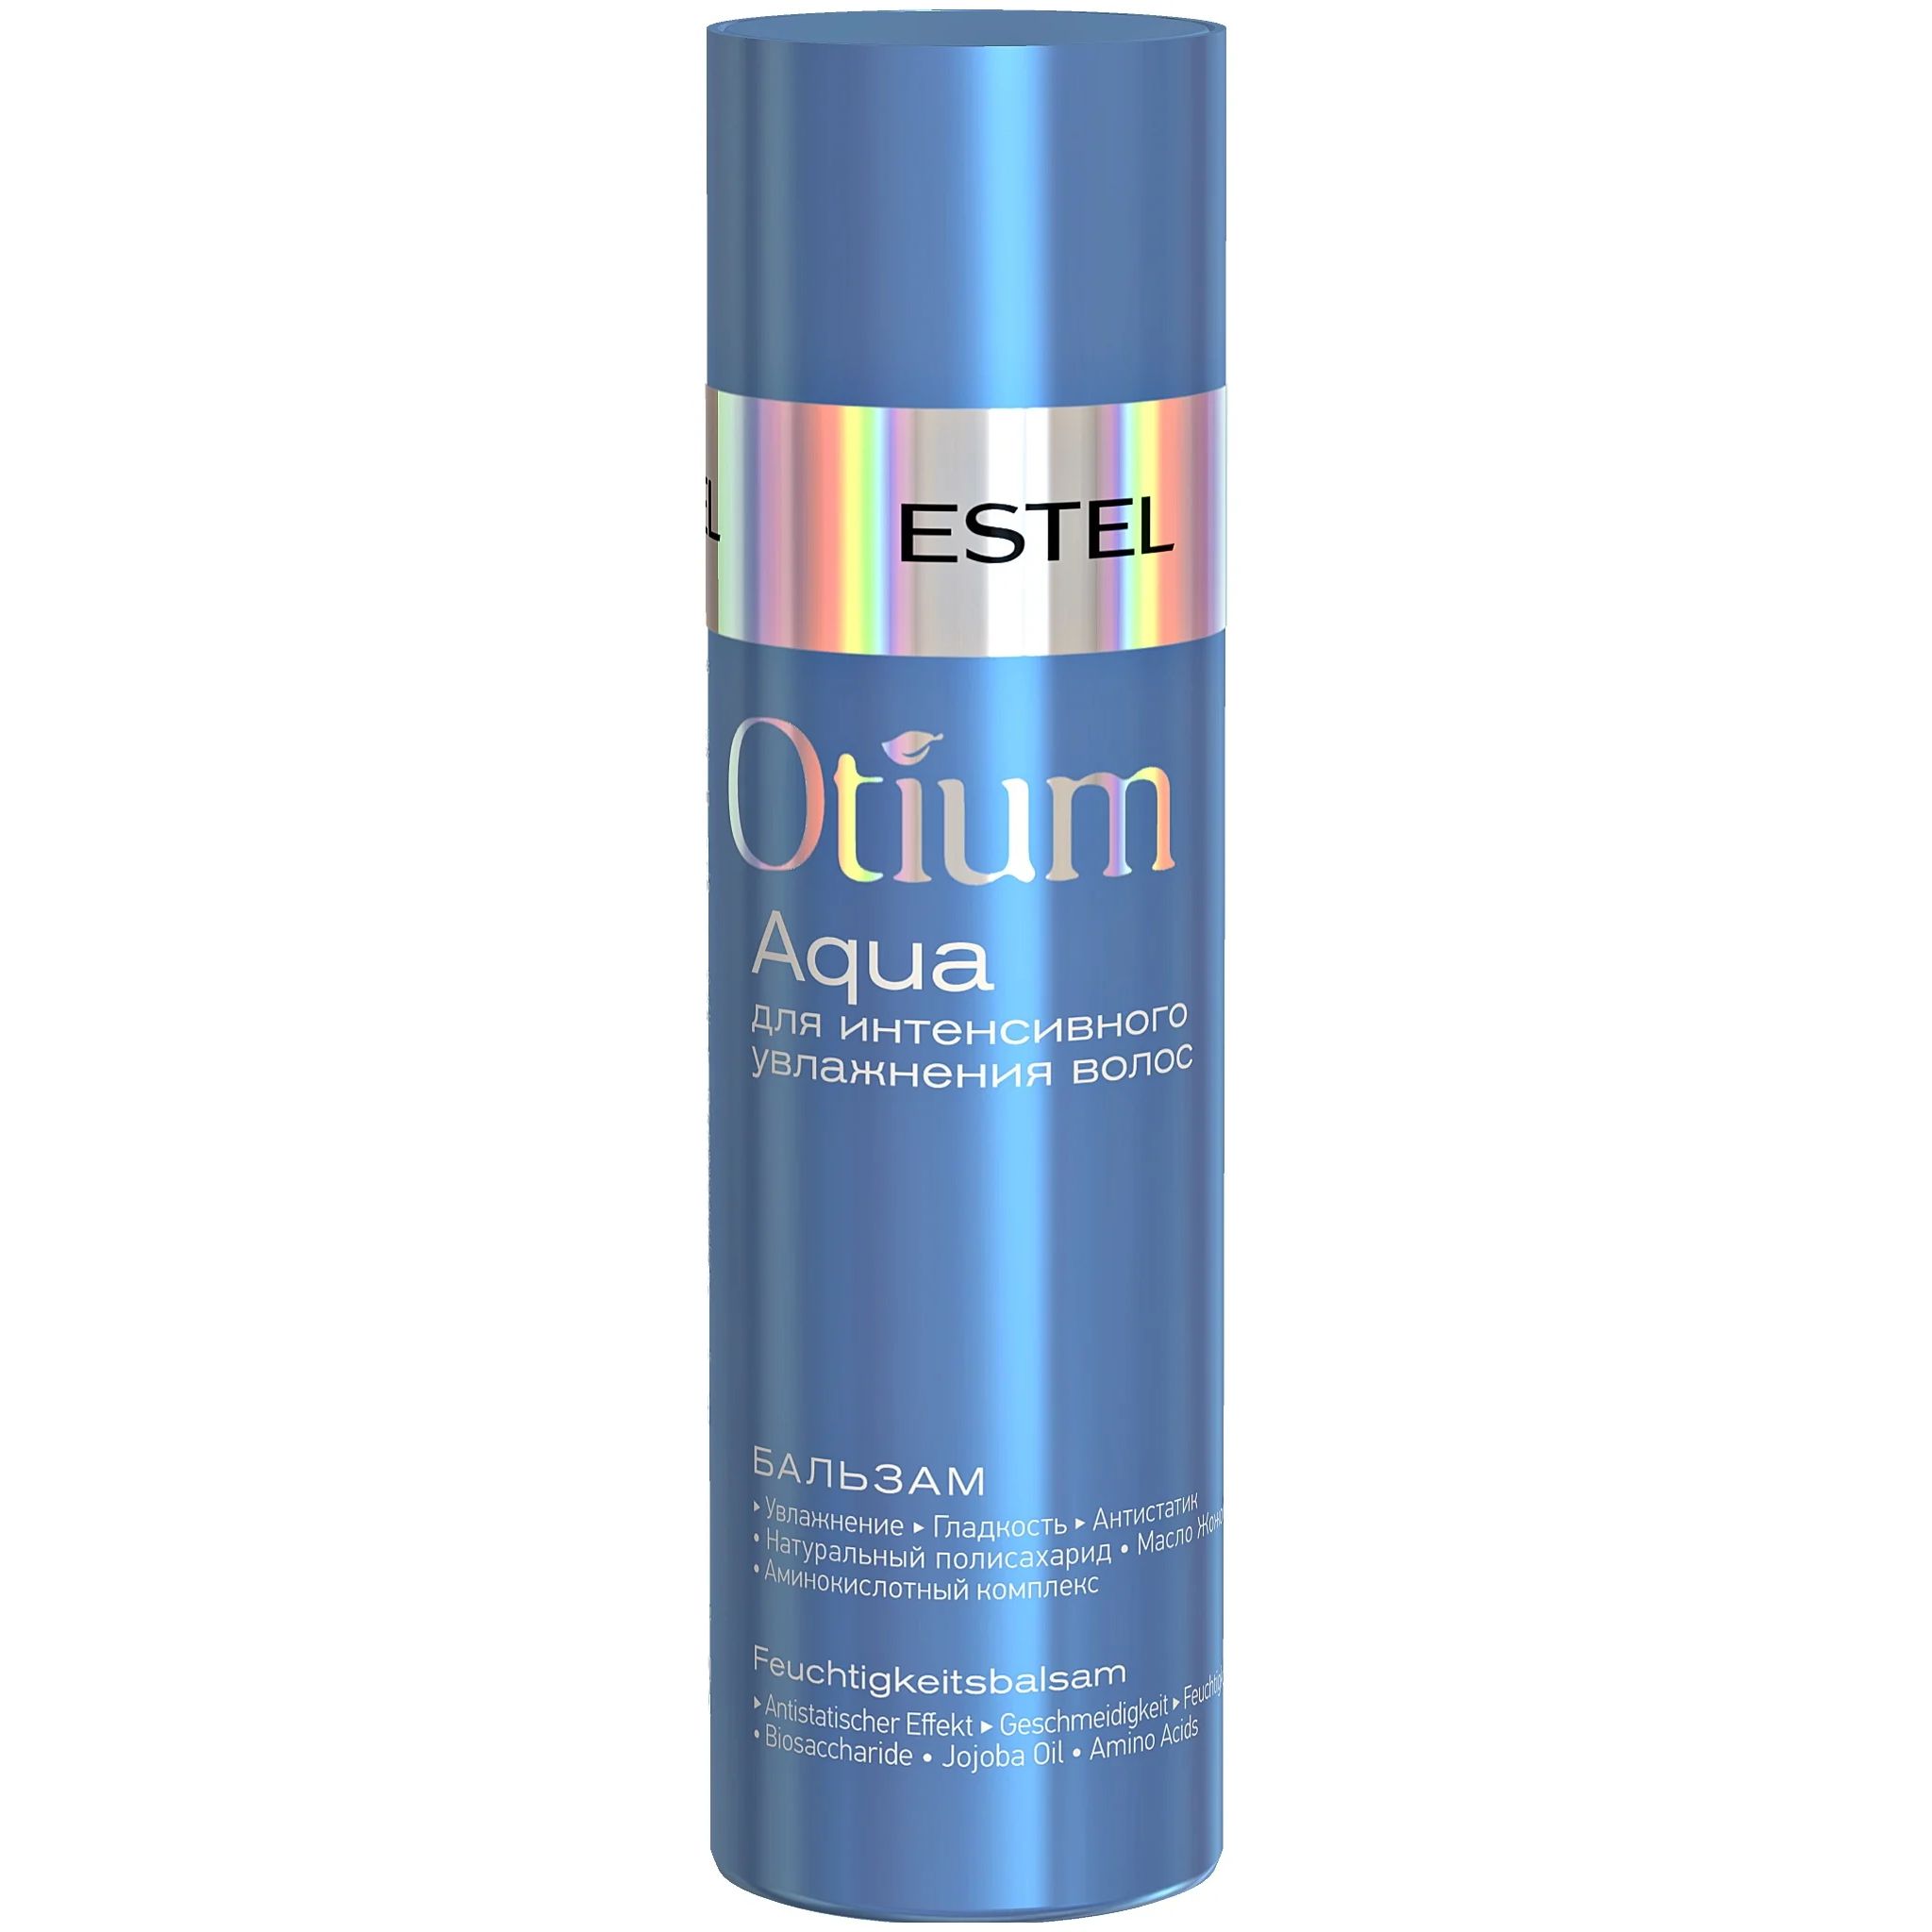 Бальзам для волос ESTEL Otium Aqua Balm 200 мл набор estel 18 plus набор для ухода за волосами шампунь 250 мл бальзам 200 мл